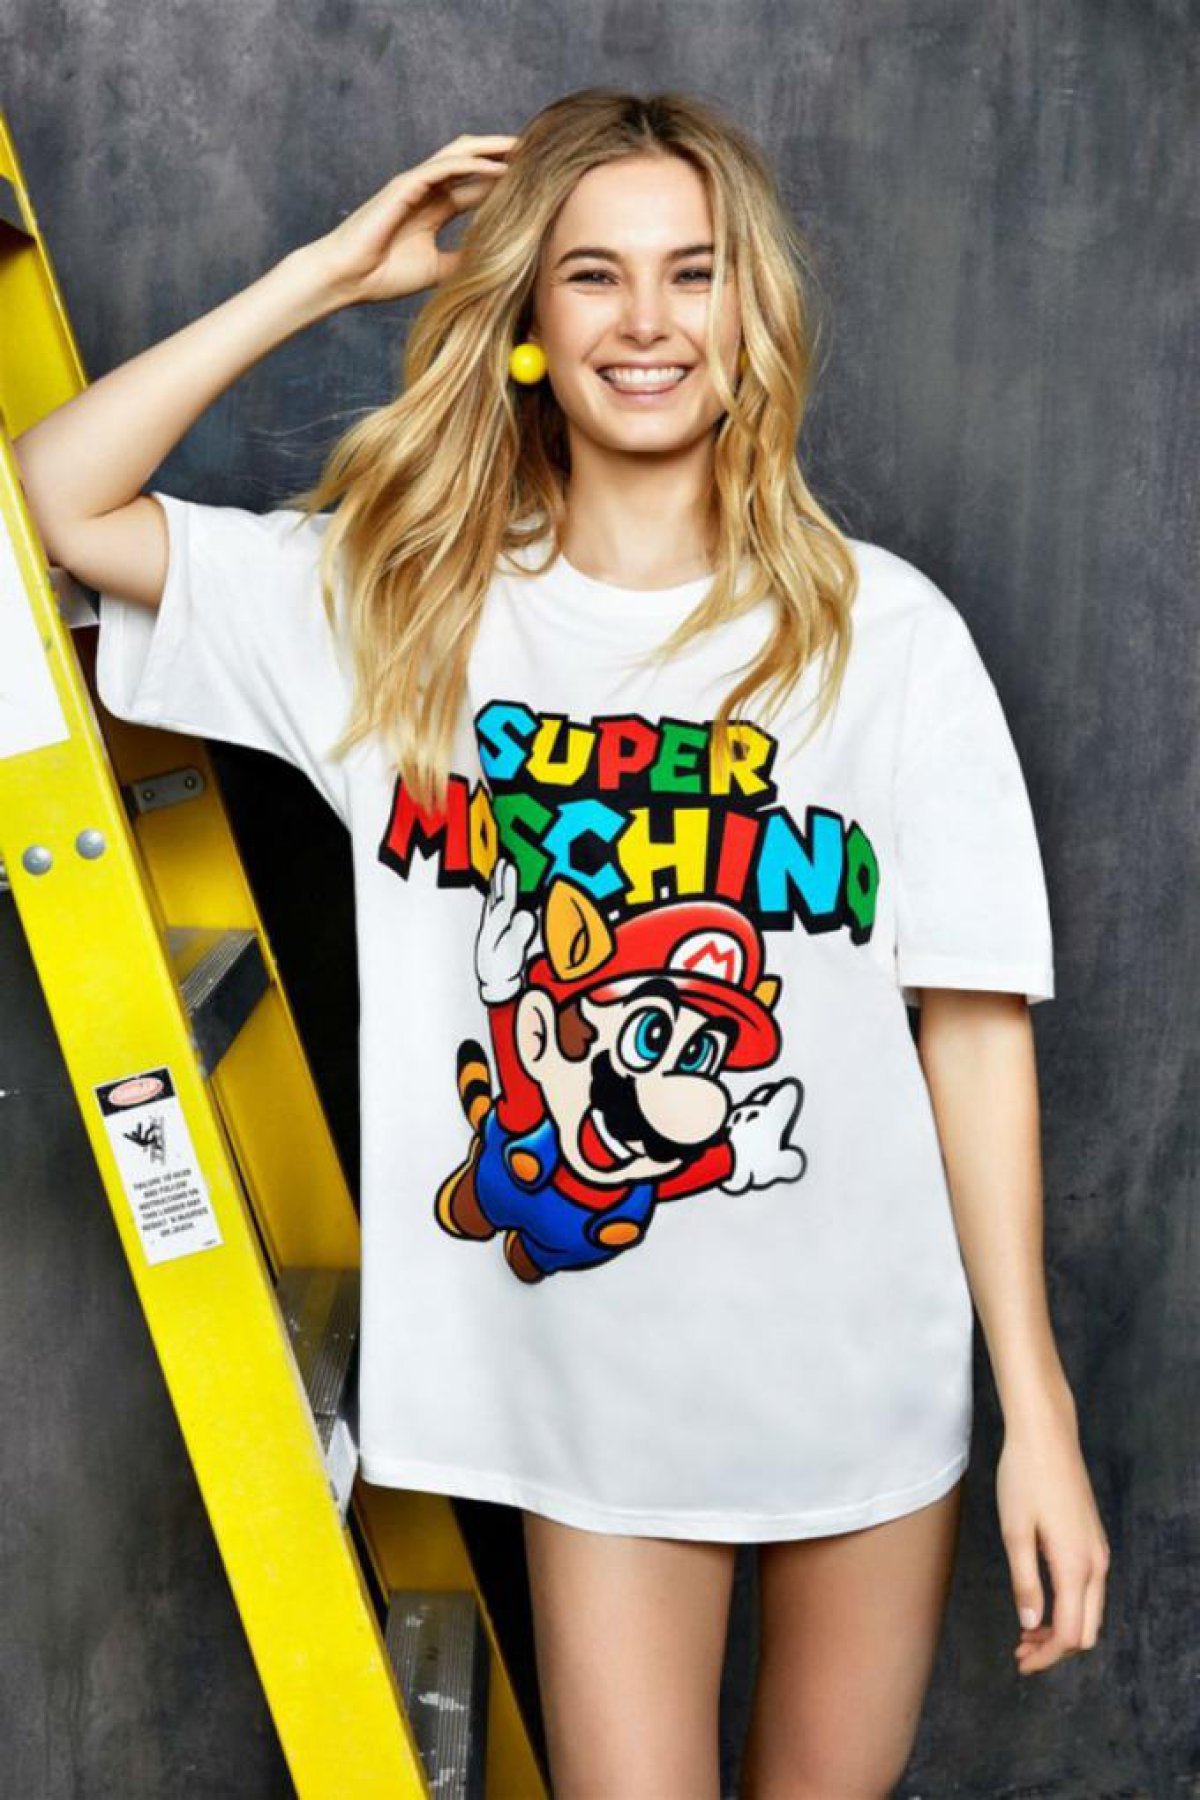 Moschino lanza su línea de ropa inspirada en Super Mario Bros